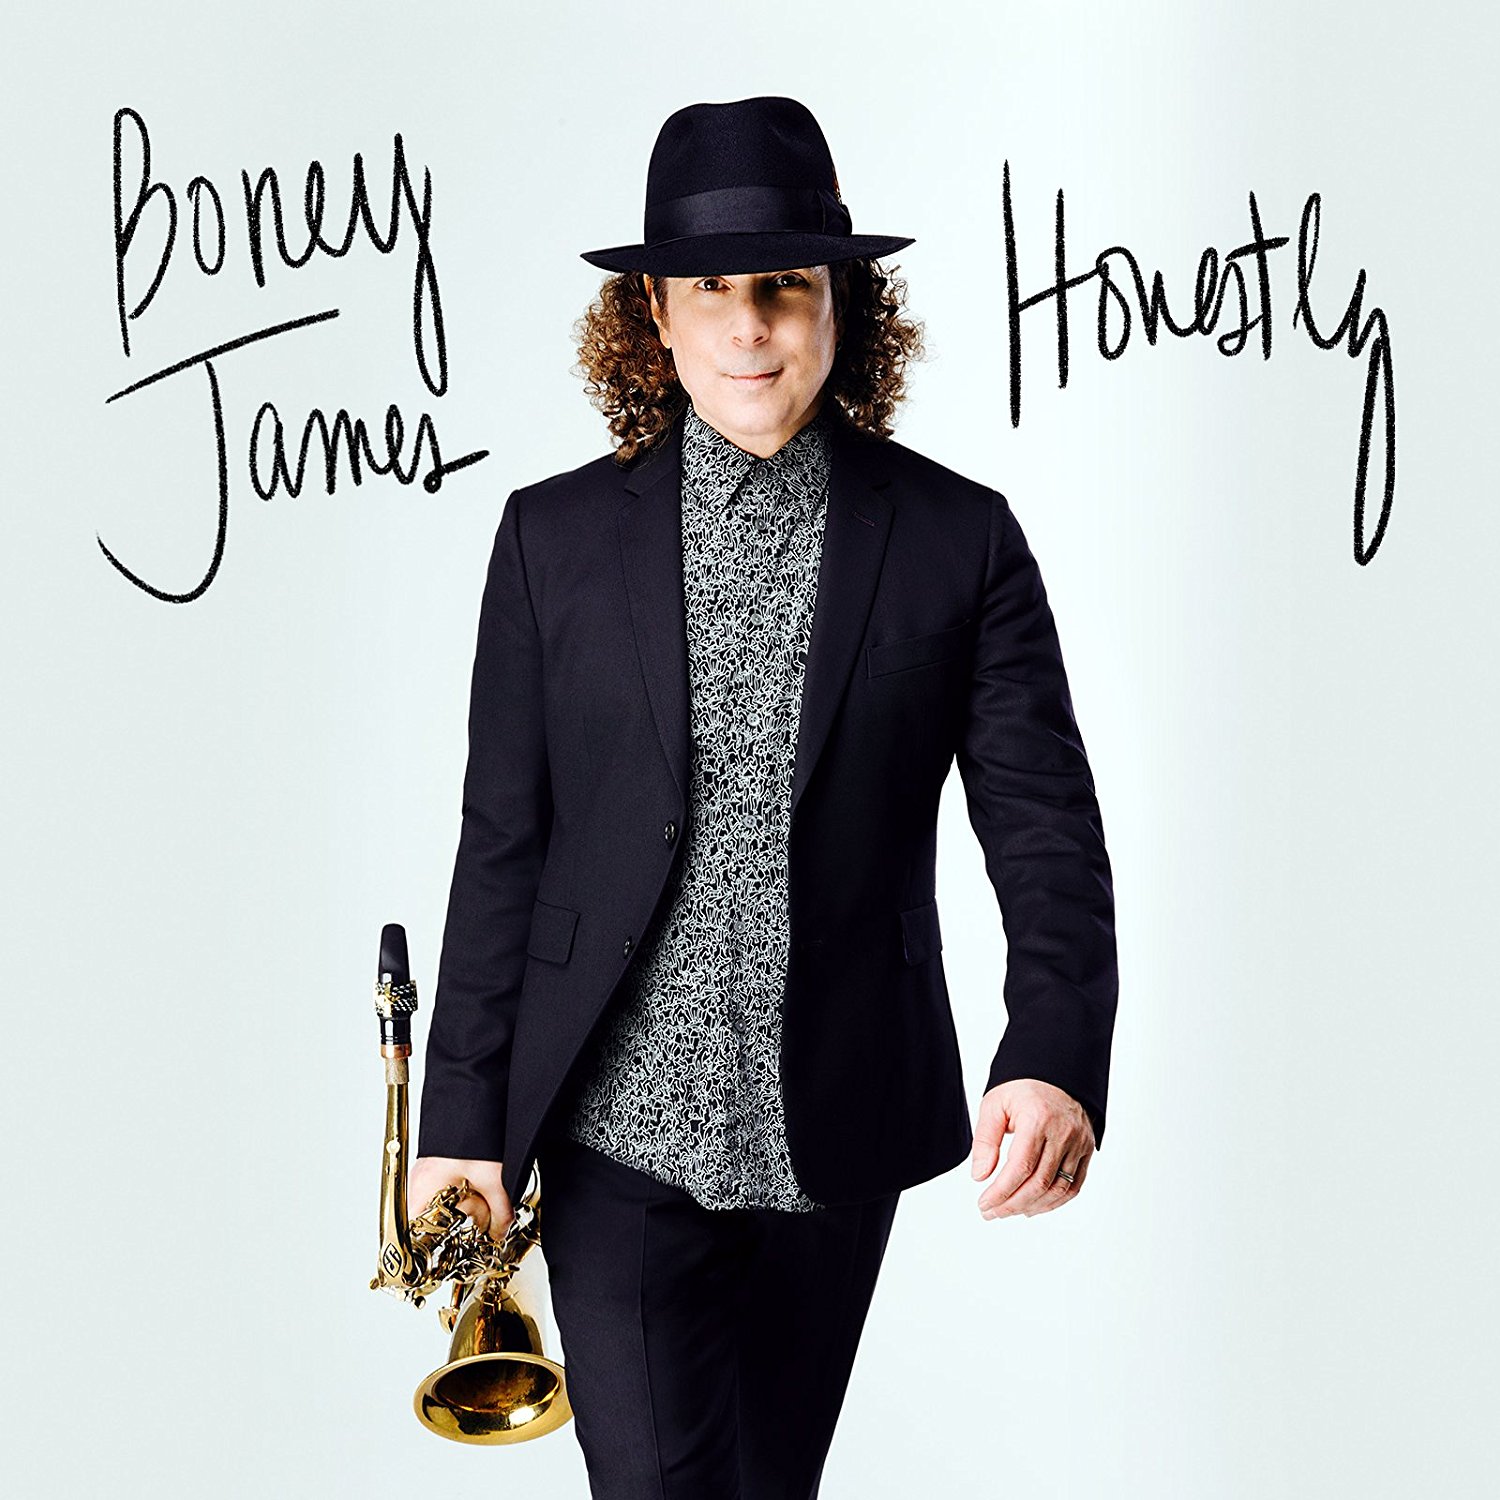 BONEY JAMES - Honestly cover 